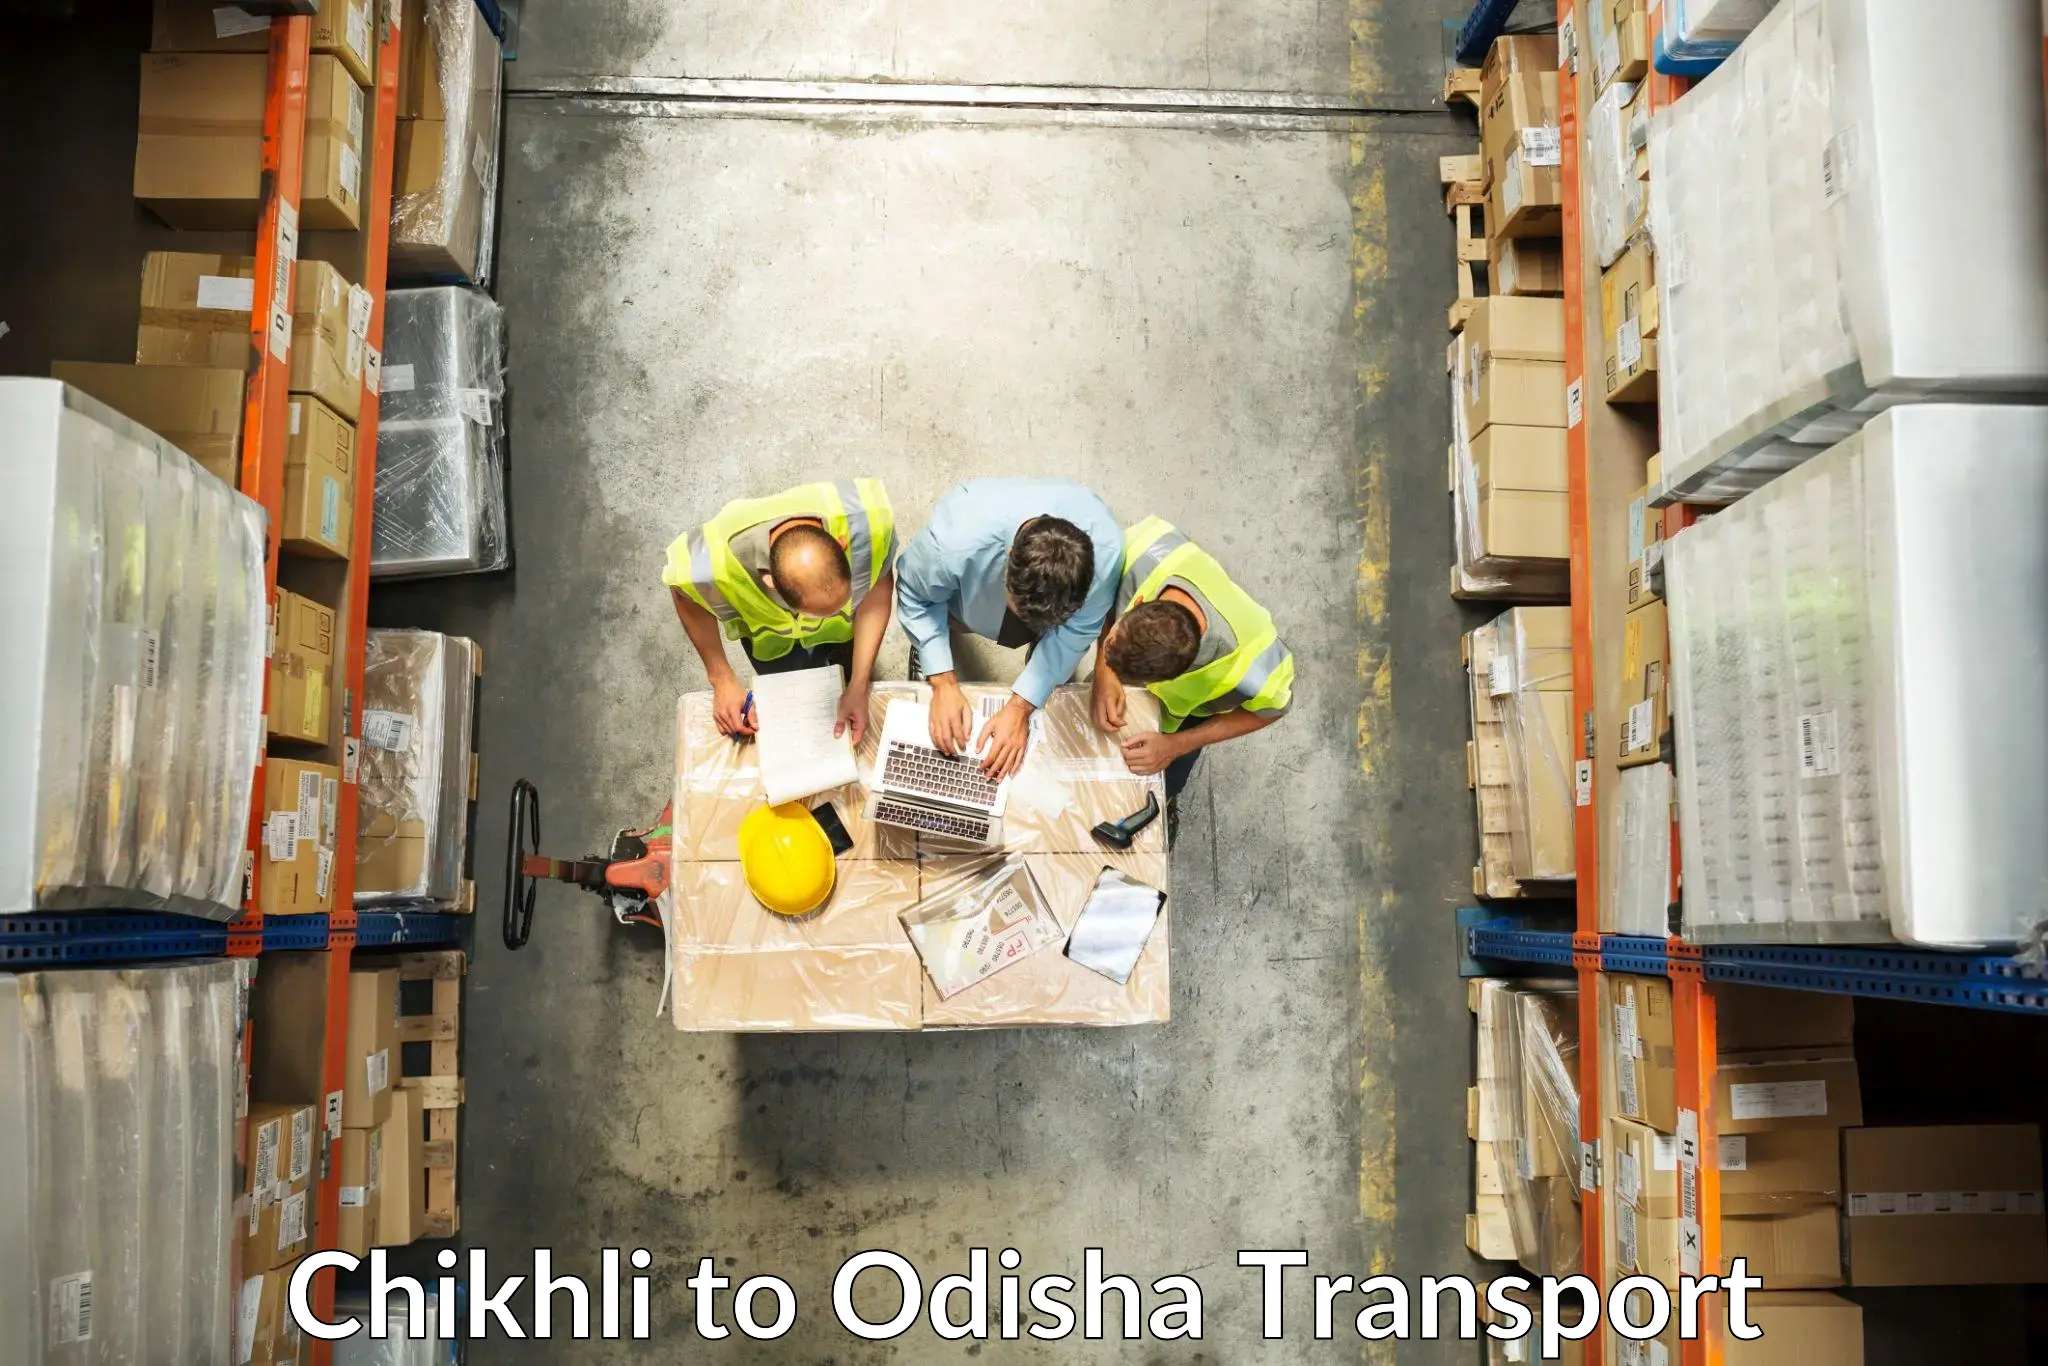 Online transport service Chikhli to Tihidi